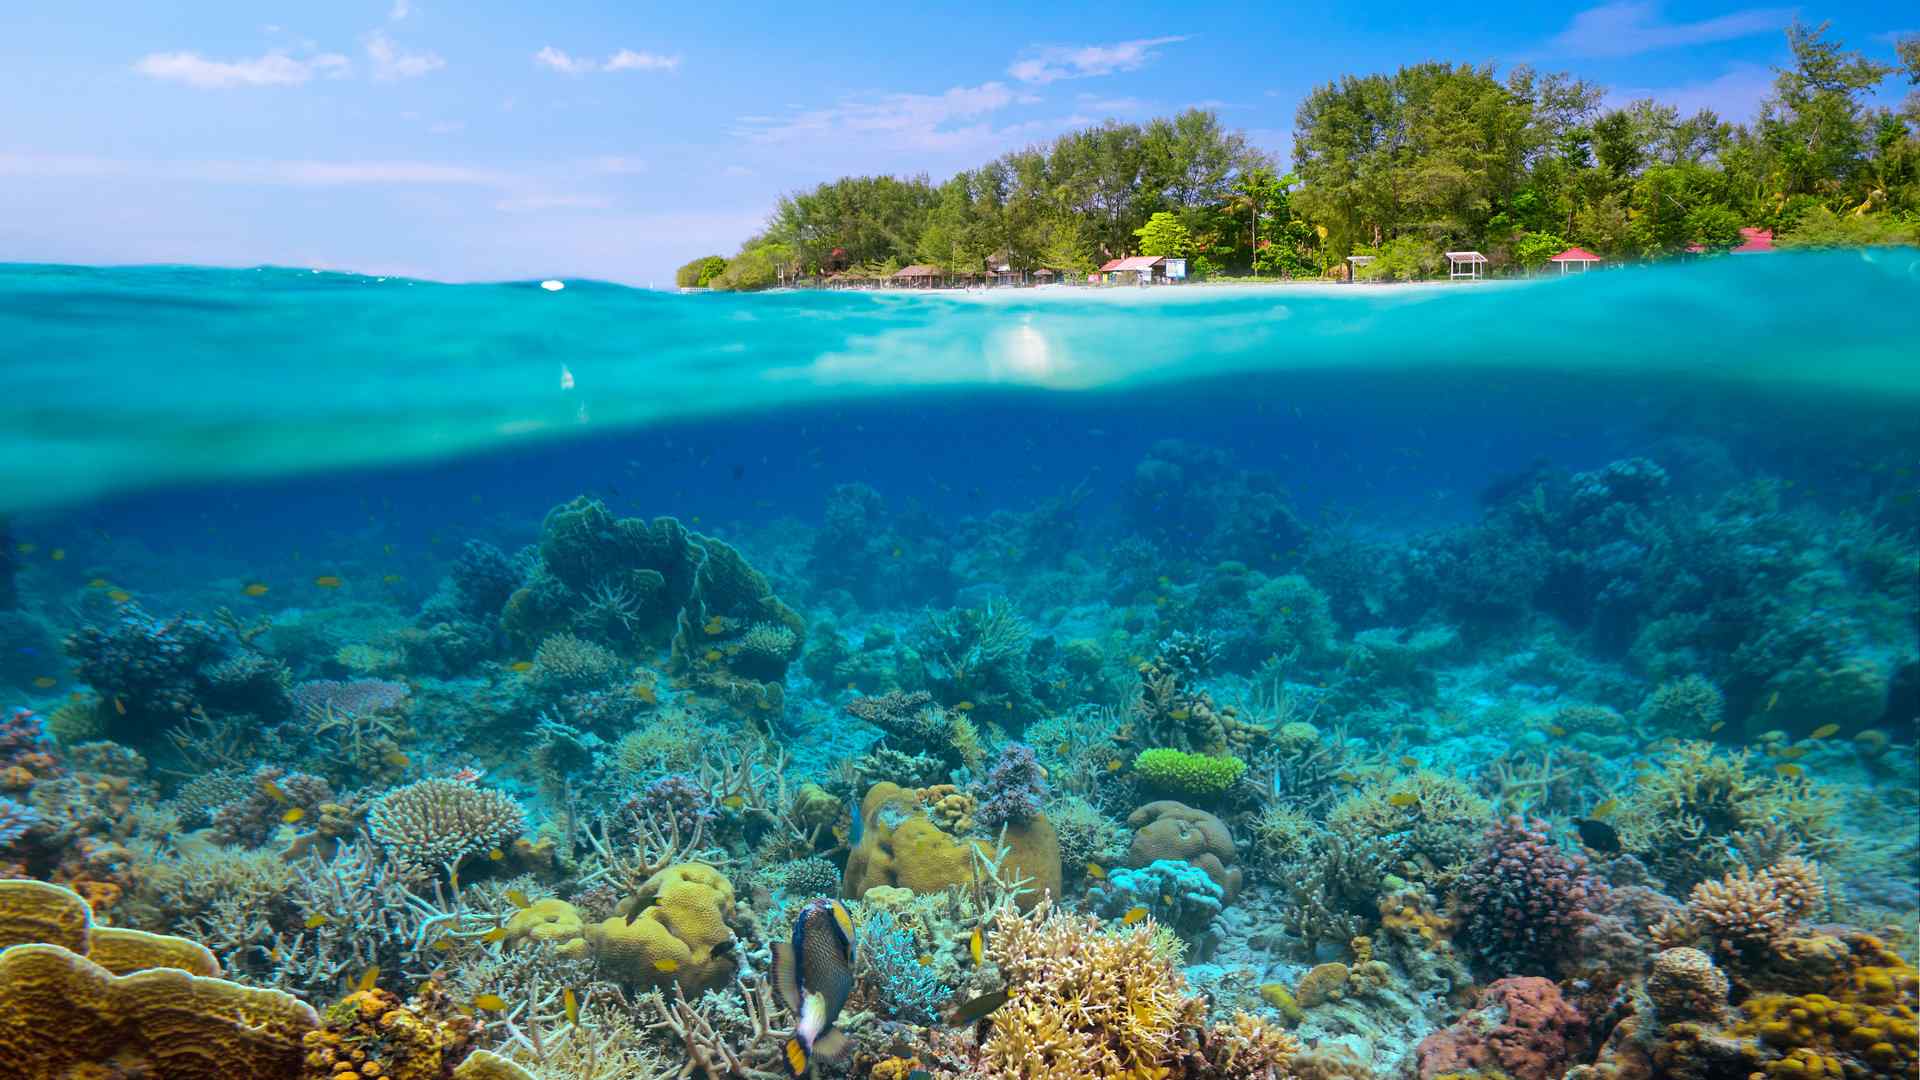 清透静谧的海底珊瑚景色图片高清电脑壁纸 第二辑